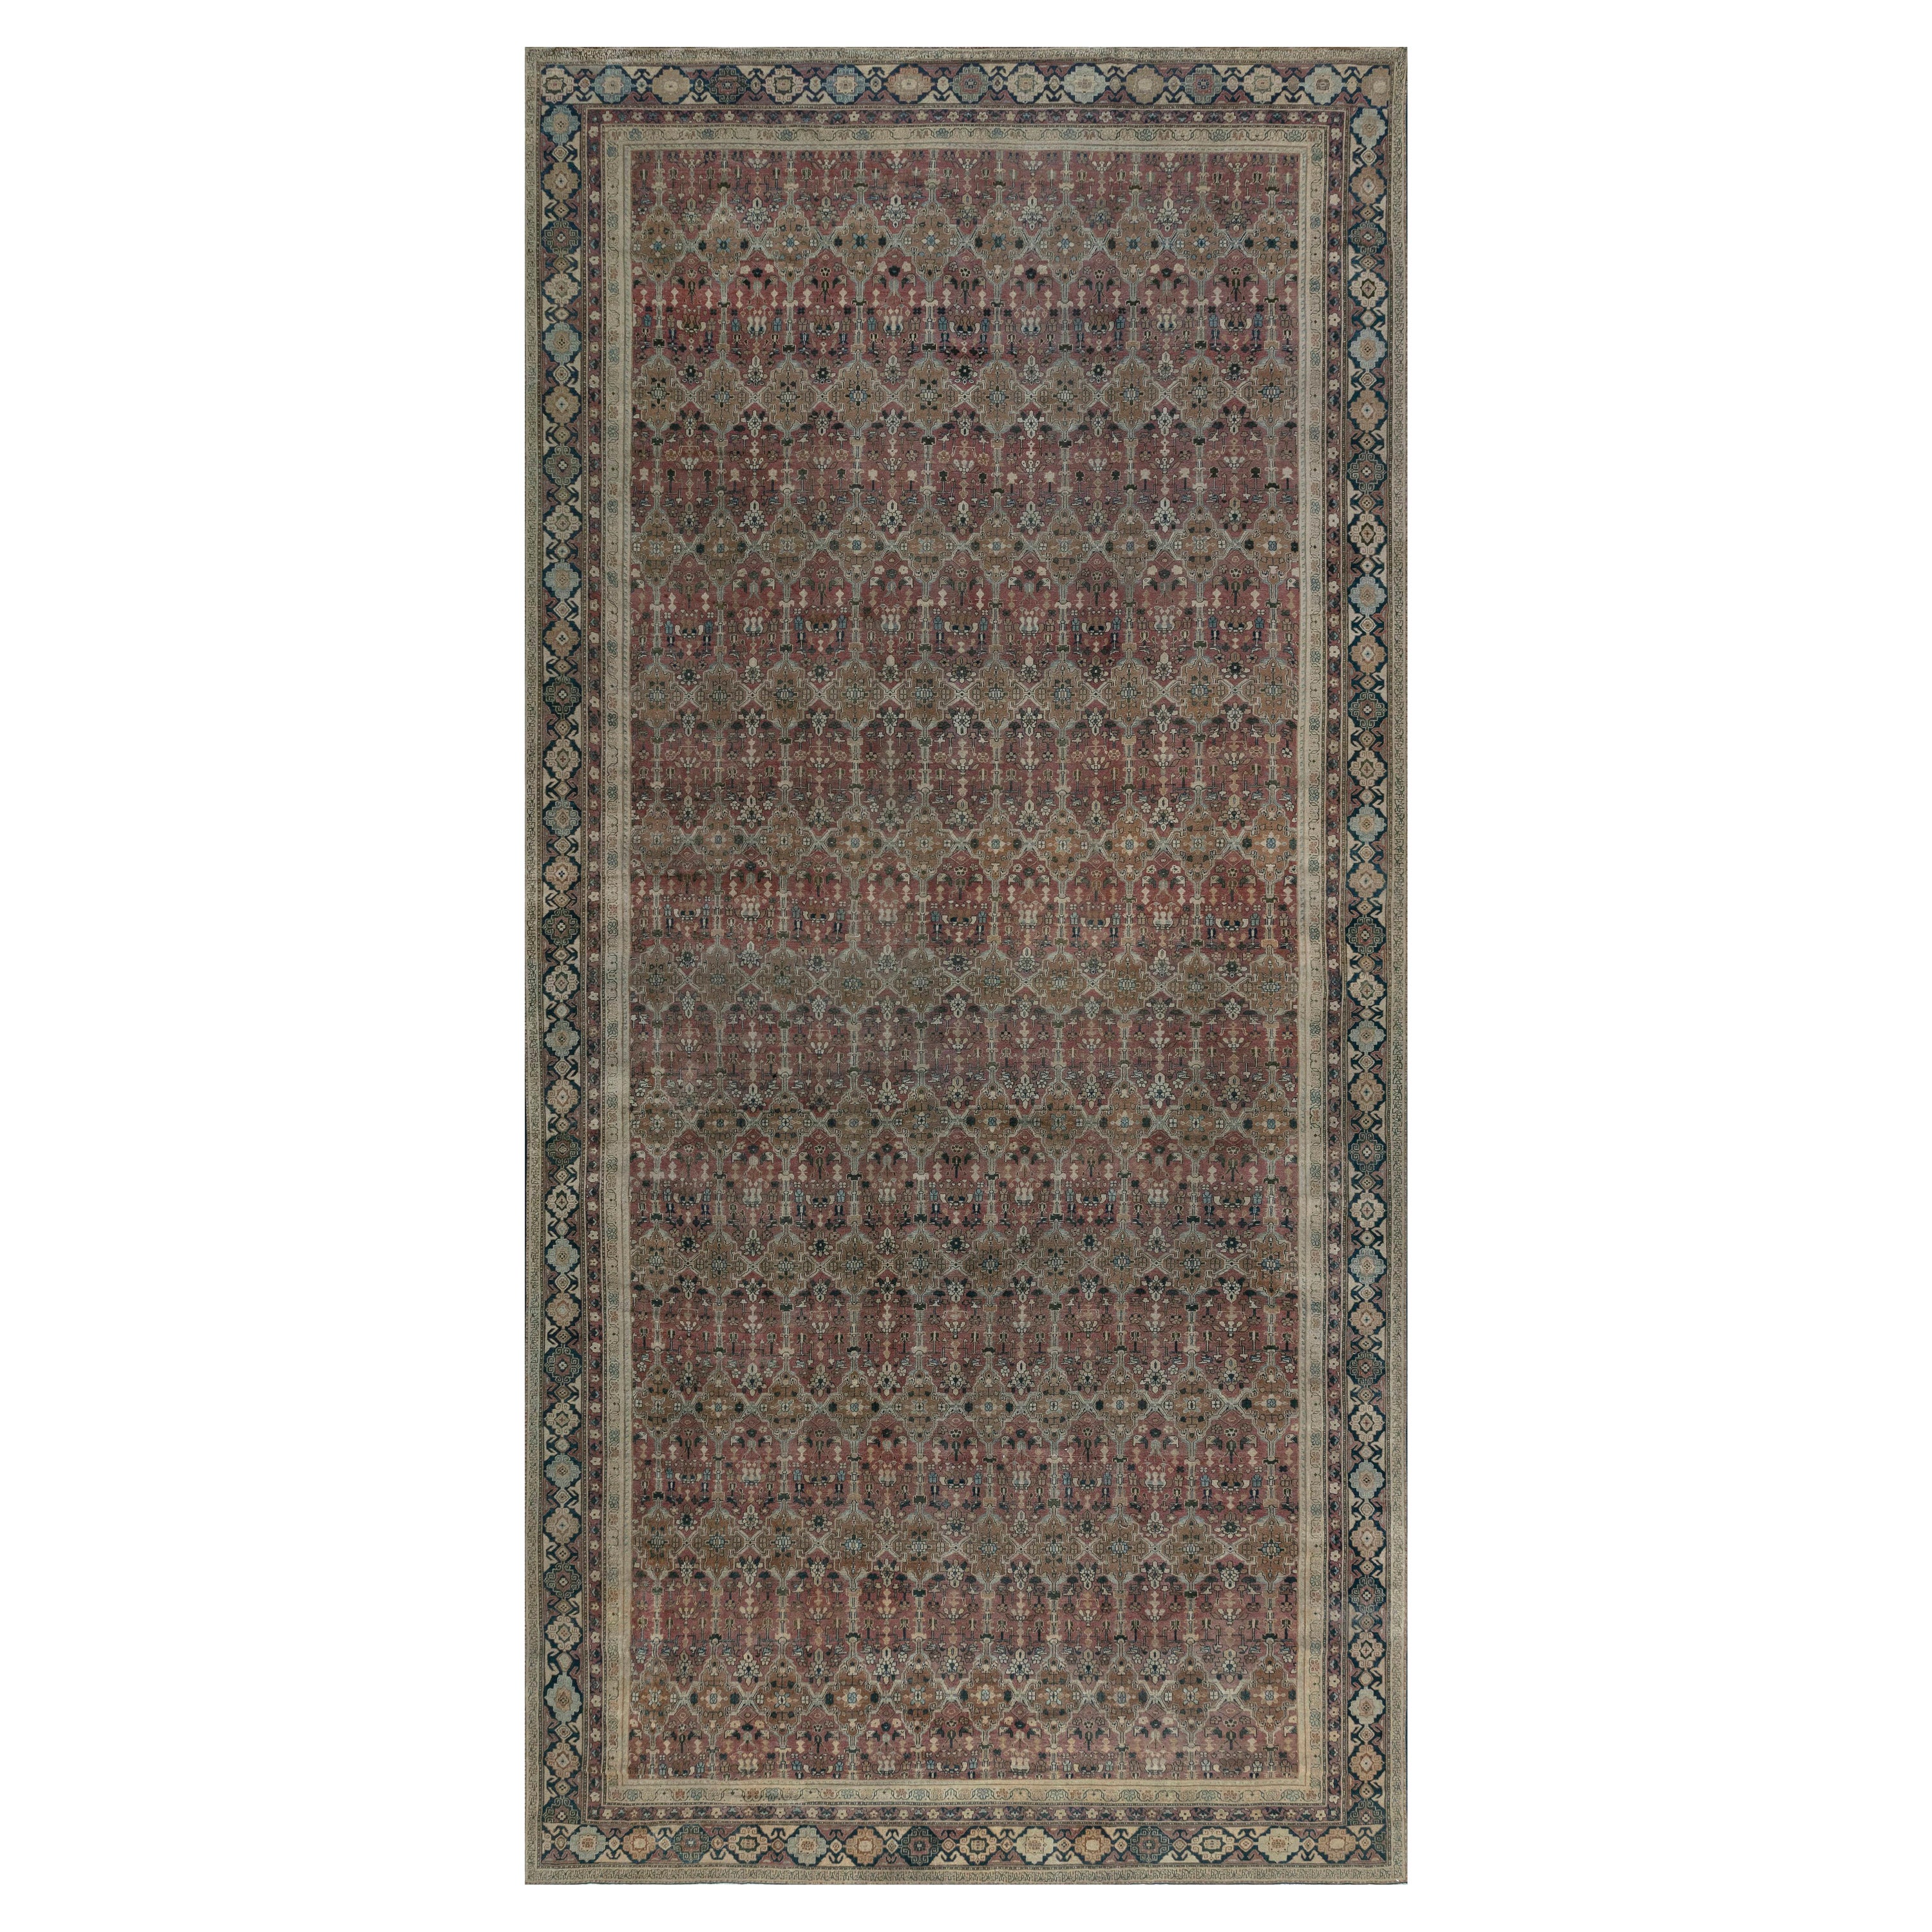 Antiker indischer handgefertigter Teppich